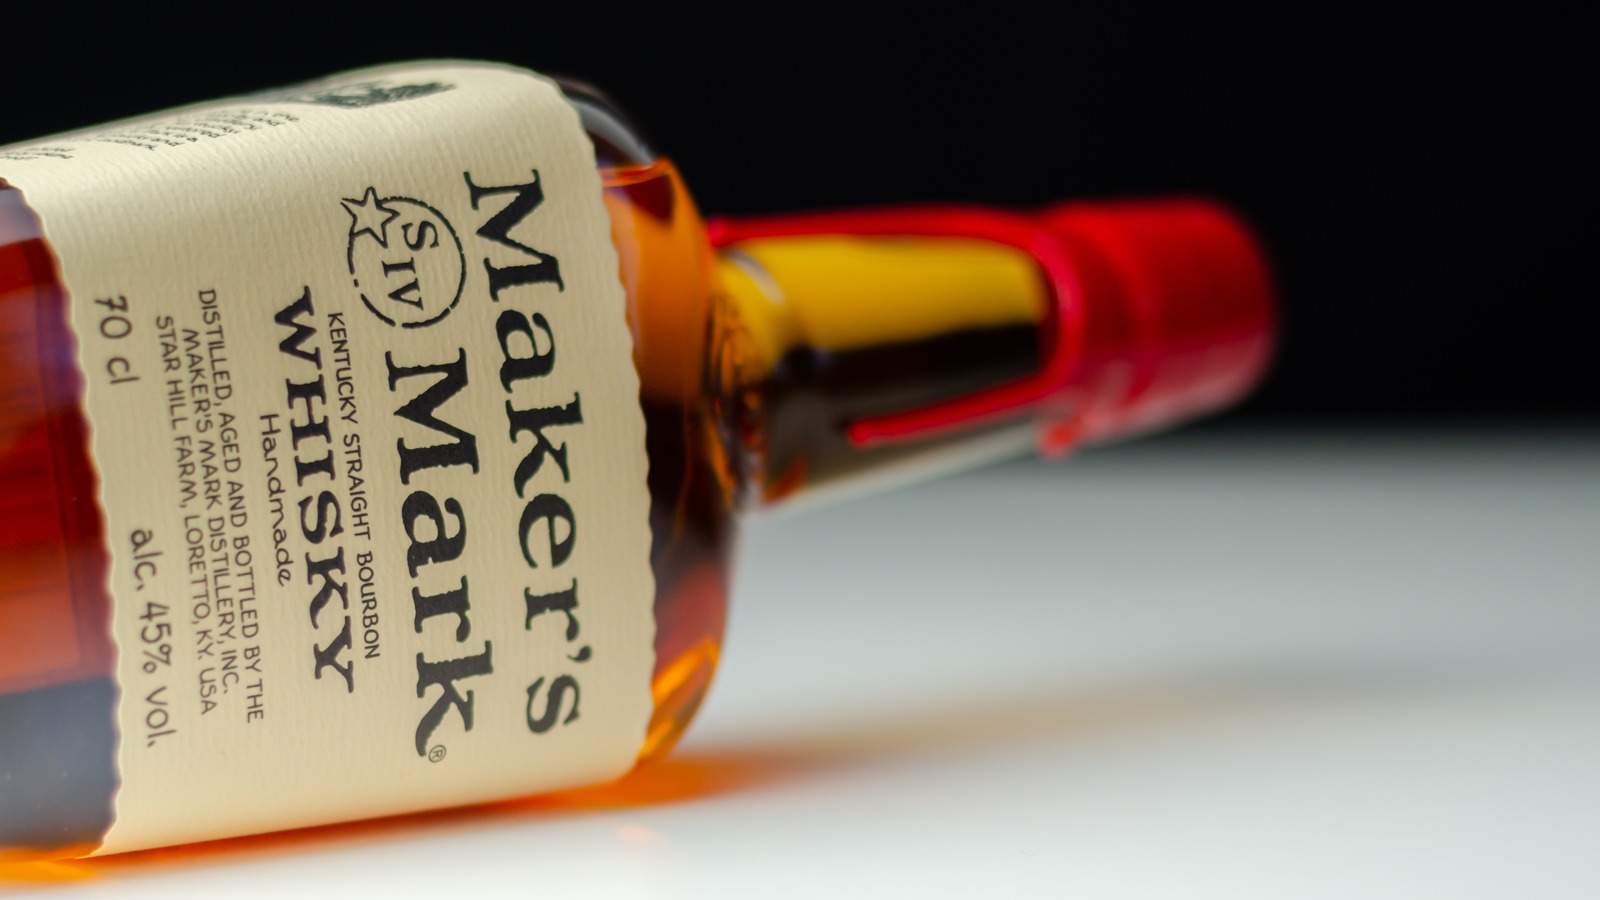 Maker's Mark Kentucky Straight Bourbon Whisky: The Ultimate Bottle Guide